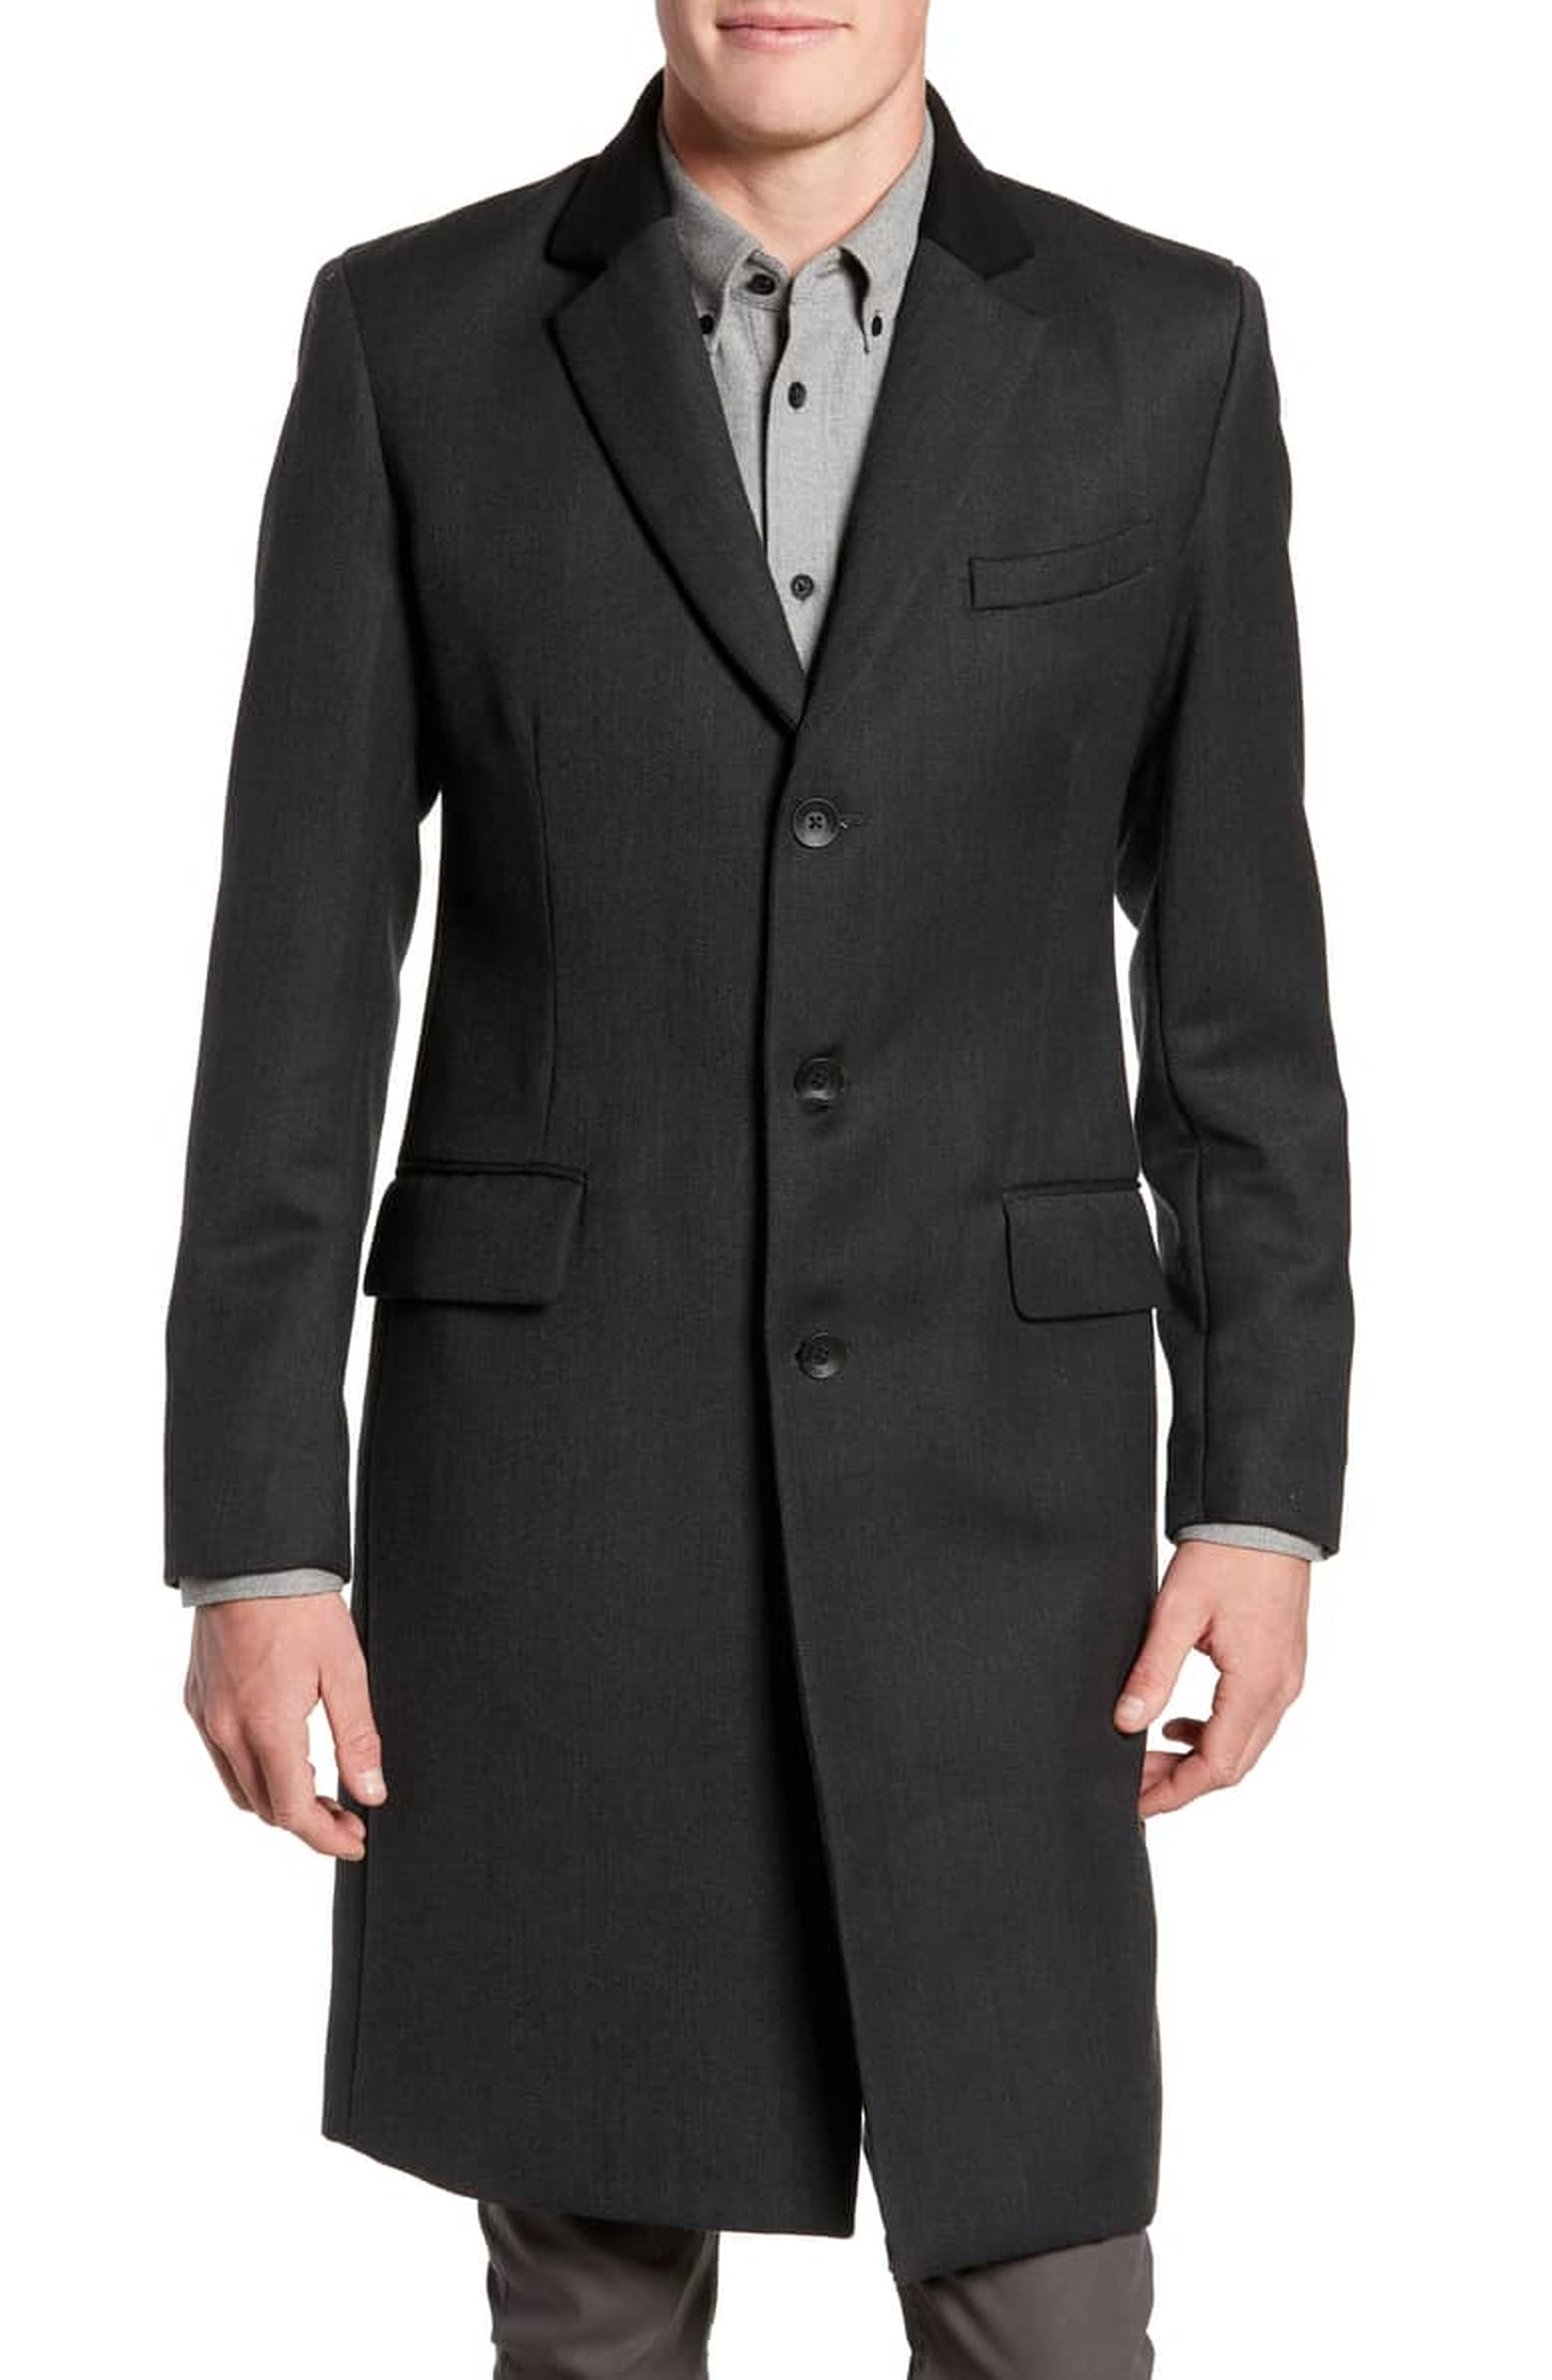 Best Coats For Men | POPSUGAR Fashion